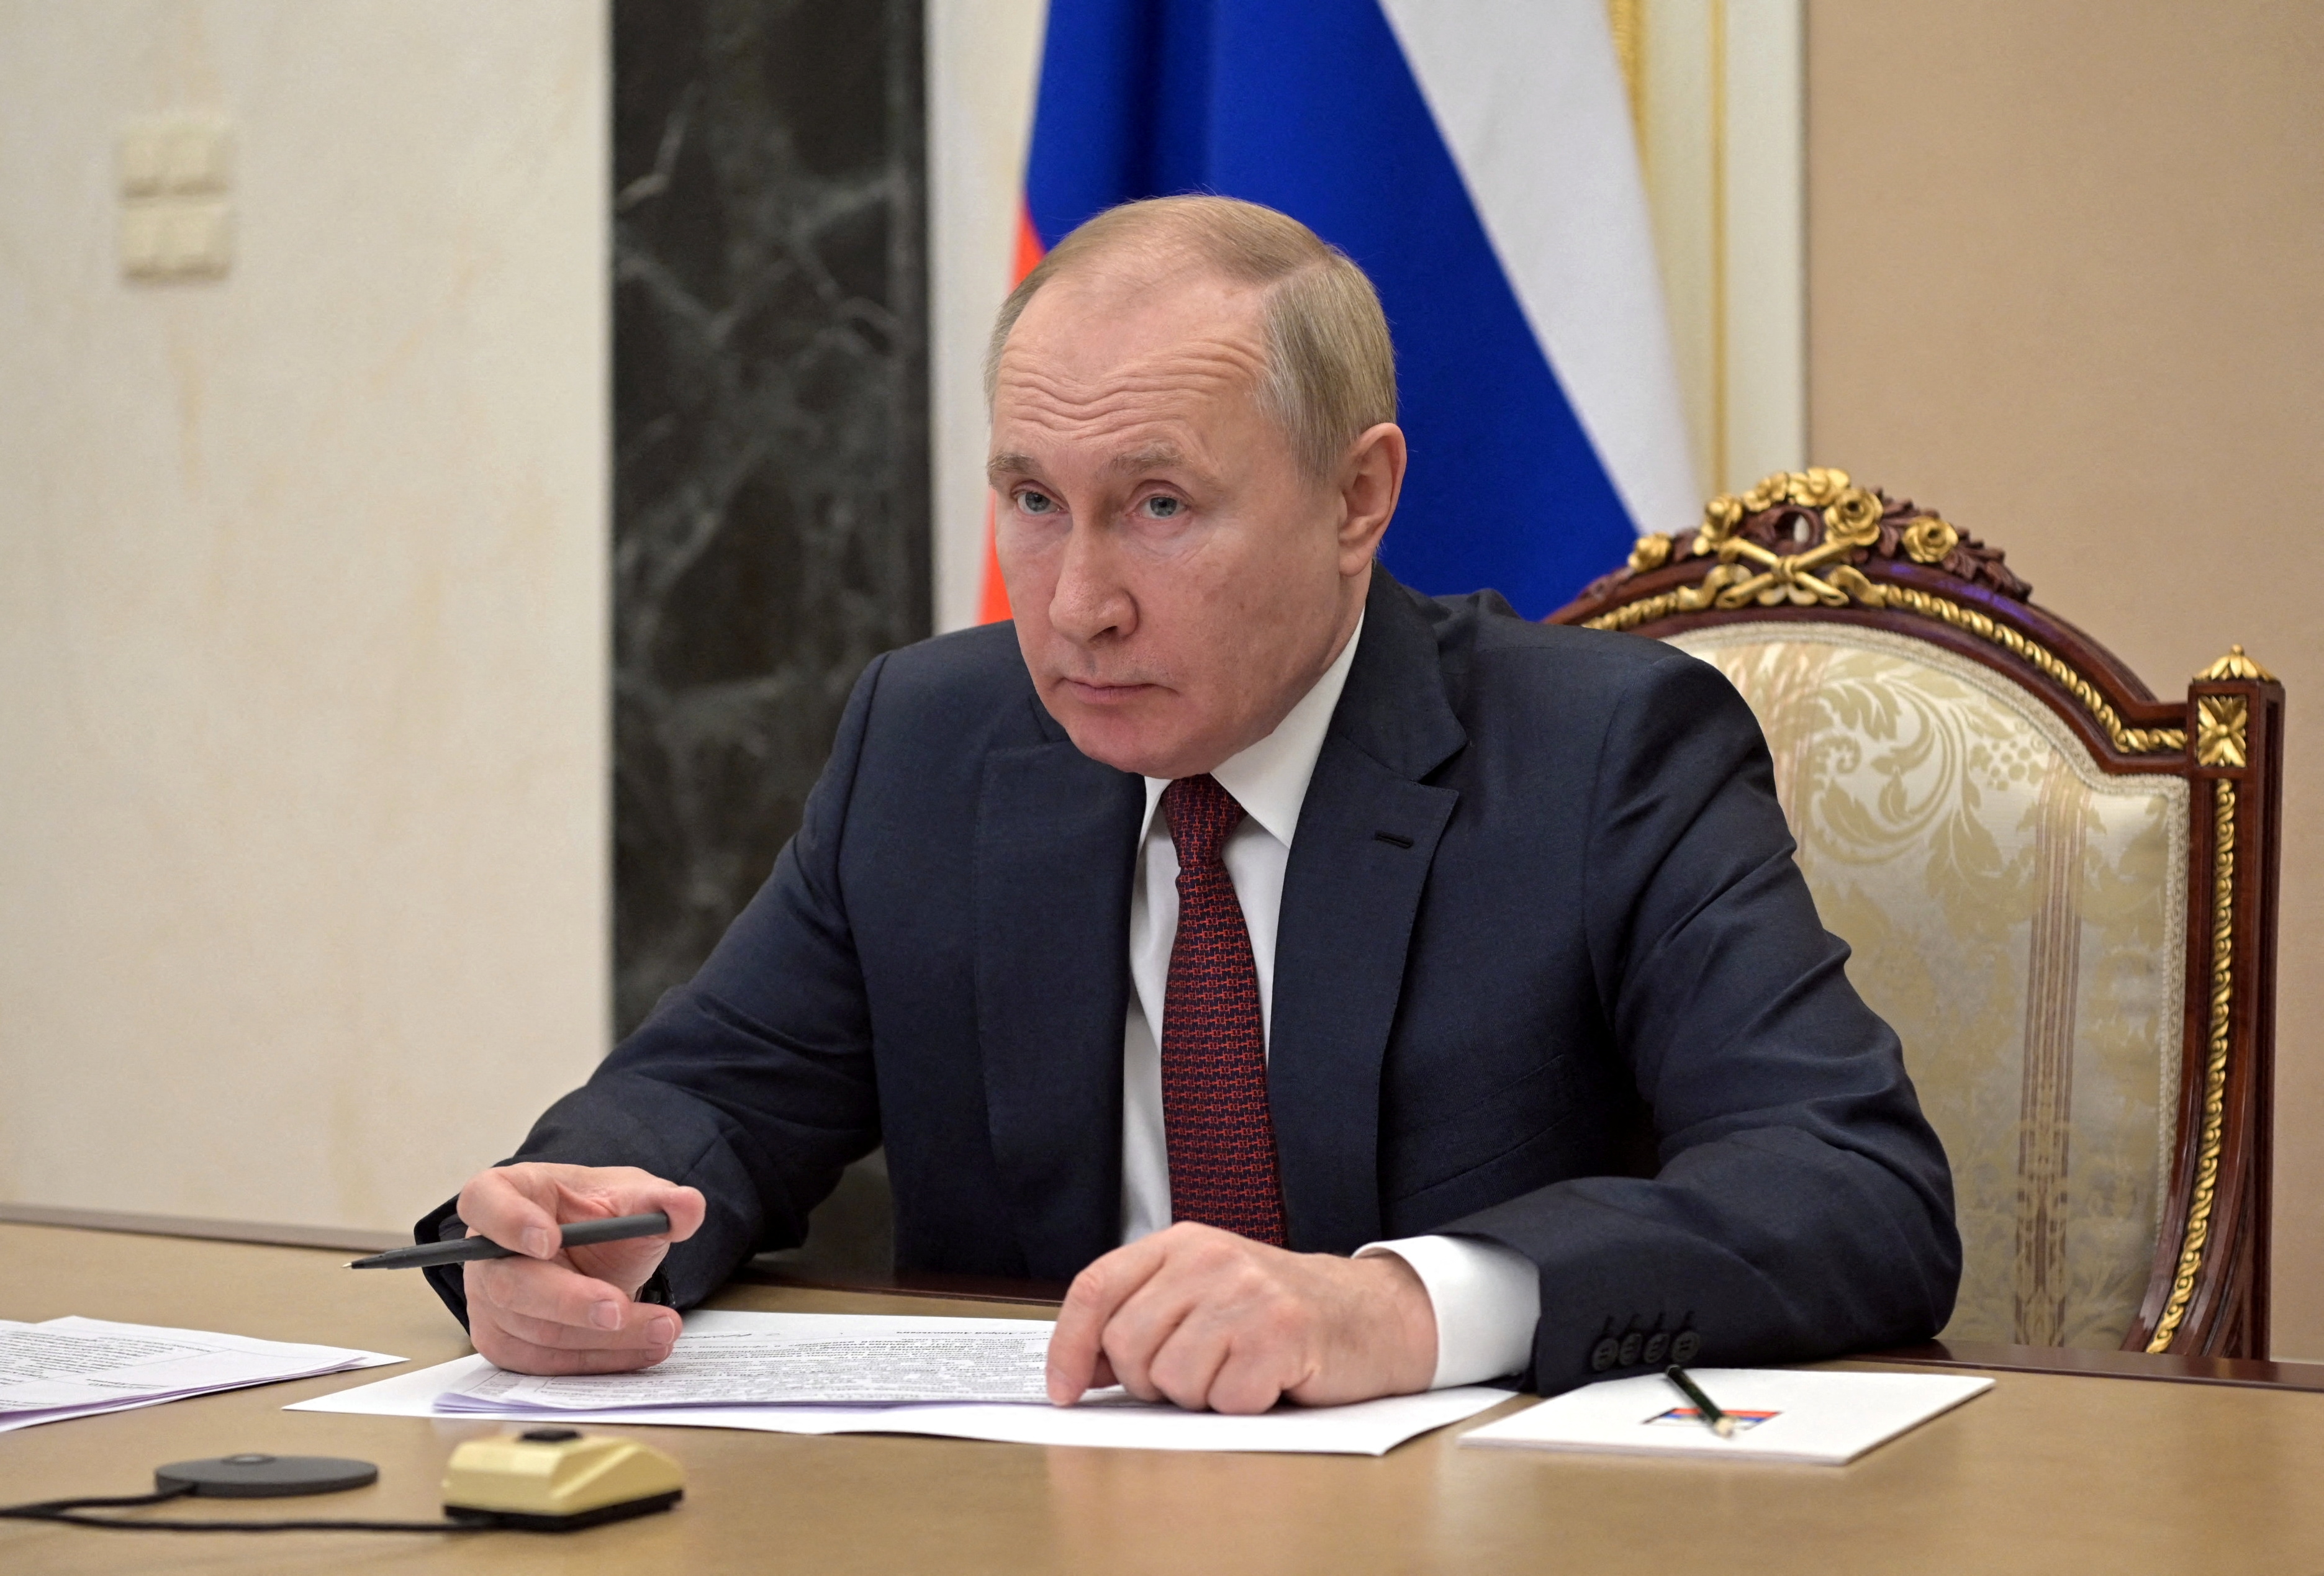 El presidente ruso, Vladimir Putin, asiste a una reunión con miembros del gobierno a través de un enlace de video en Moscú, Rusia, el 12 de enero de 2022. Sputnik/Alexei Nikolsky/Kremlin vía REUTERS